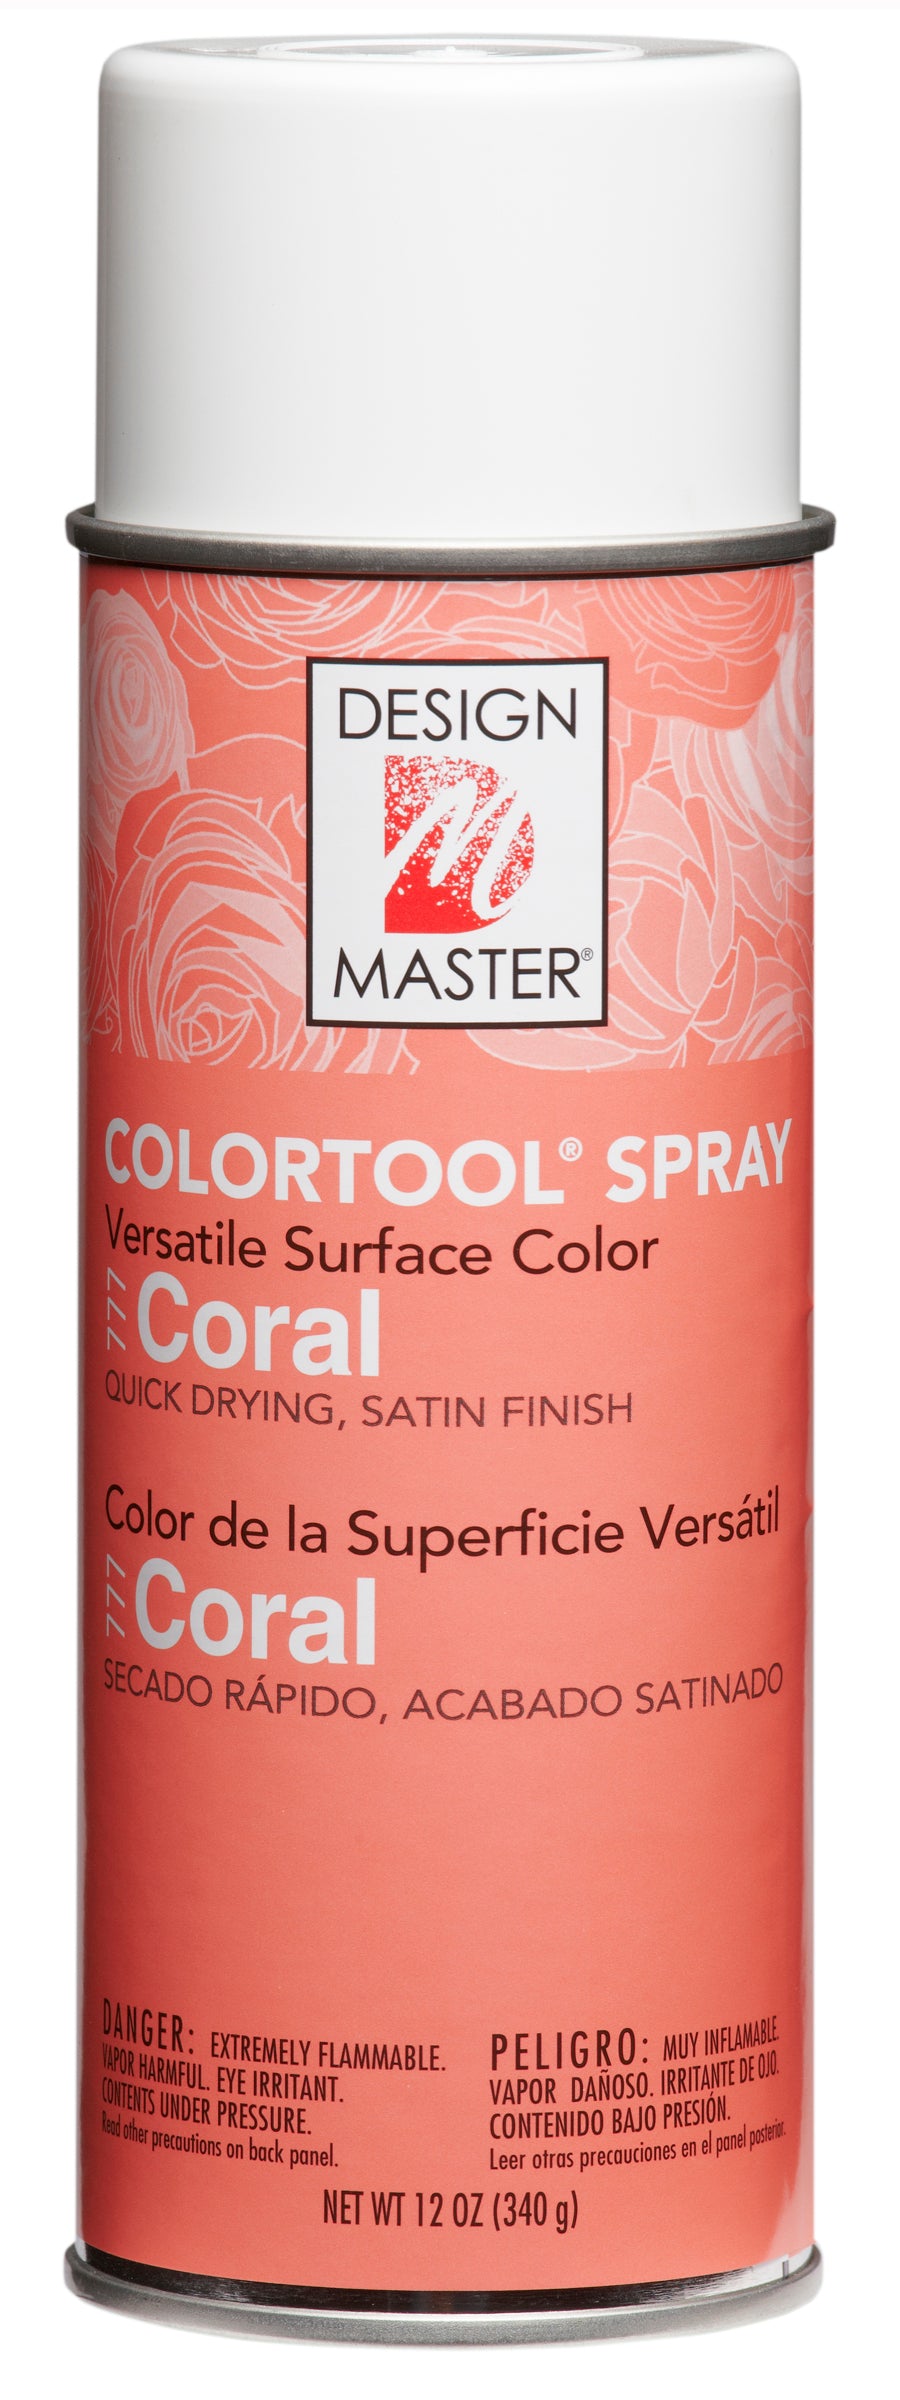 Design Master Colortool Spray-Coral